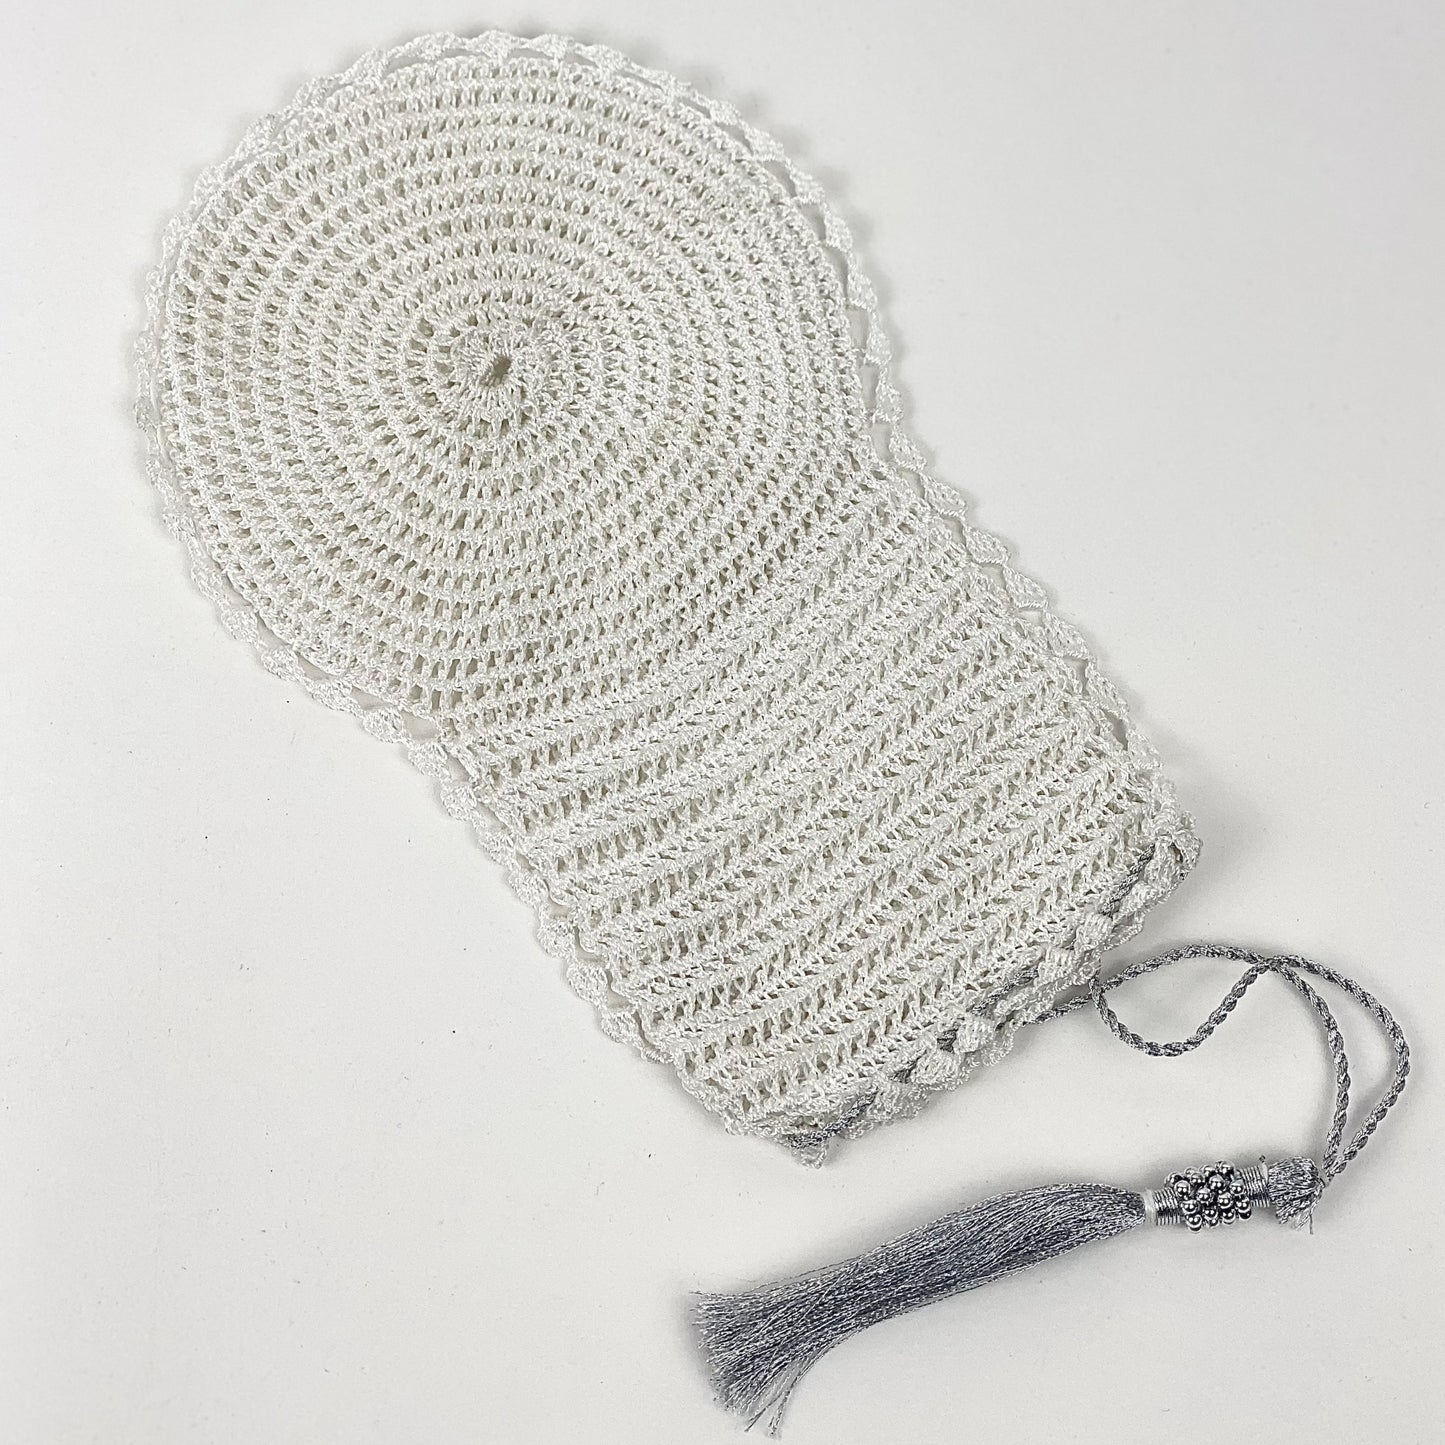 White/Silver Tassel Hand Crocheted Bath Mitt - Bibi Aisha Leef/Keesah